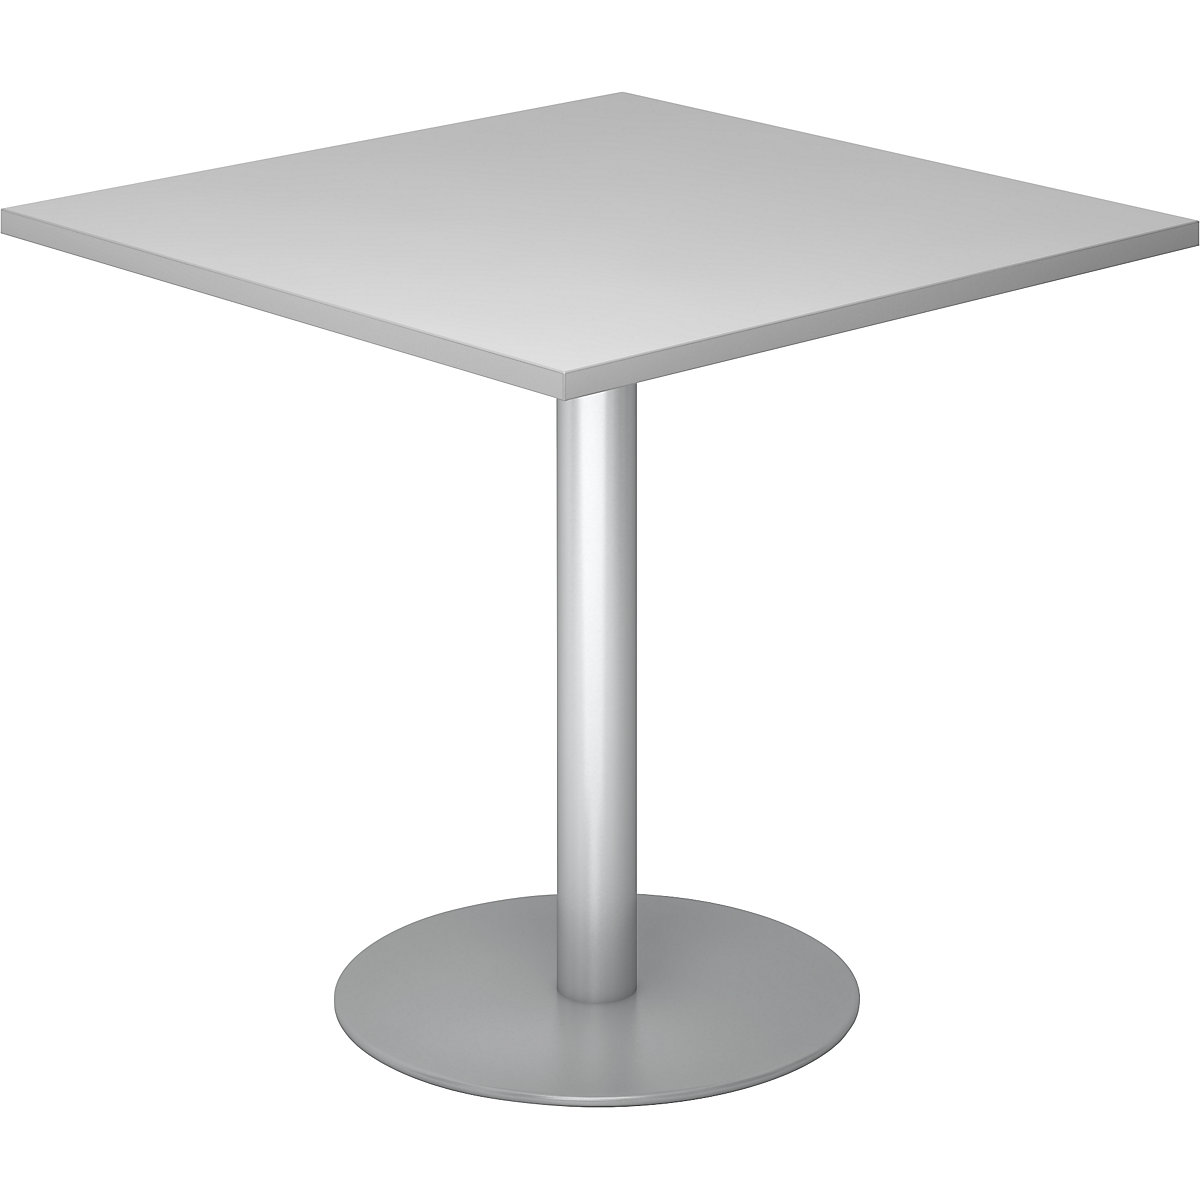 Konferencijski stol, DxŠ 800 x 800 mm, visina 755 mm, postolje u srebrnoj boji, ploča u svijetlosivoj boji-4